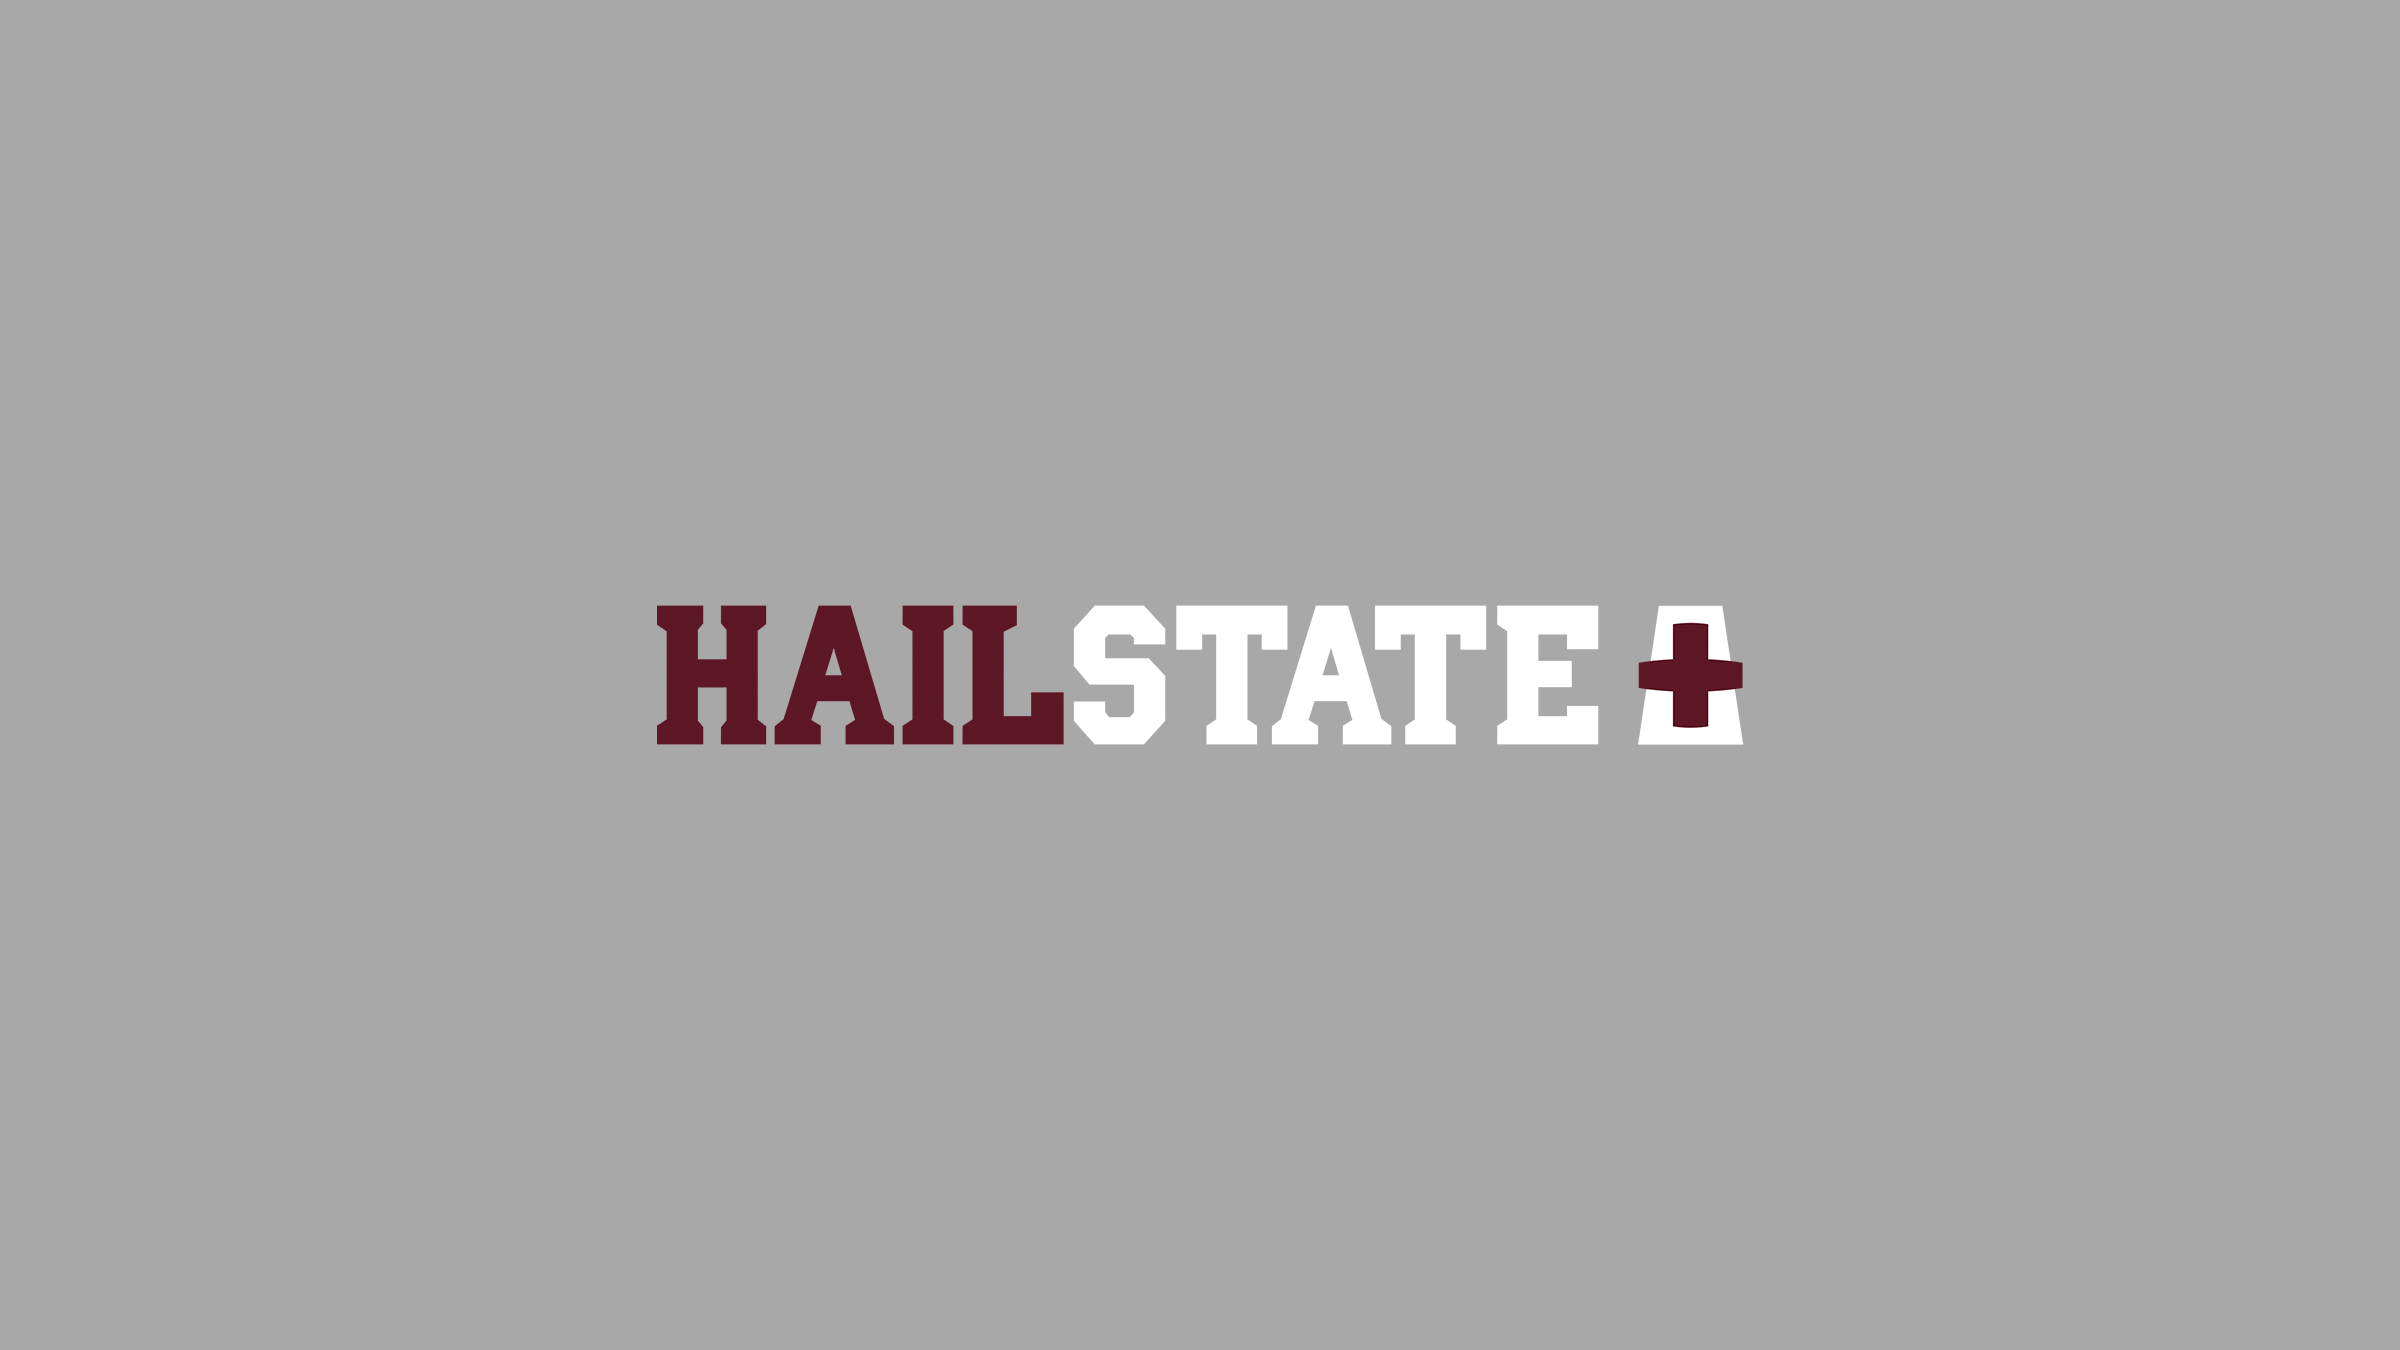 McLean-Roberts-Logo-Design-Mississippi-State-Athletics-HailState+.png